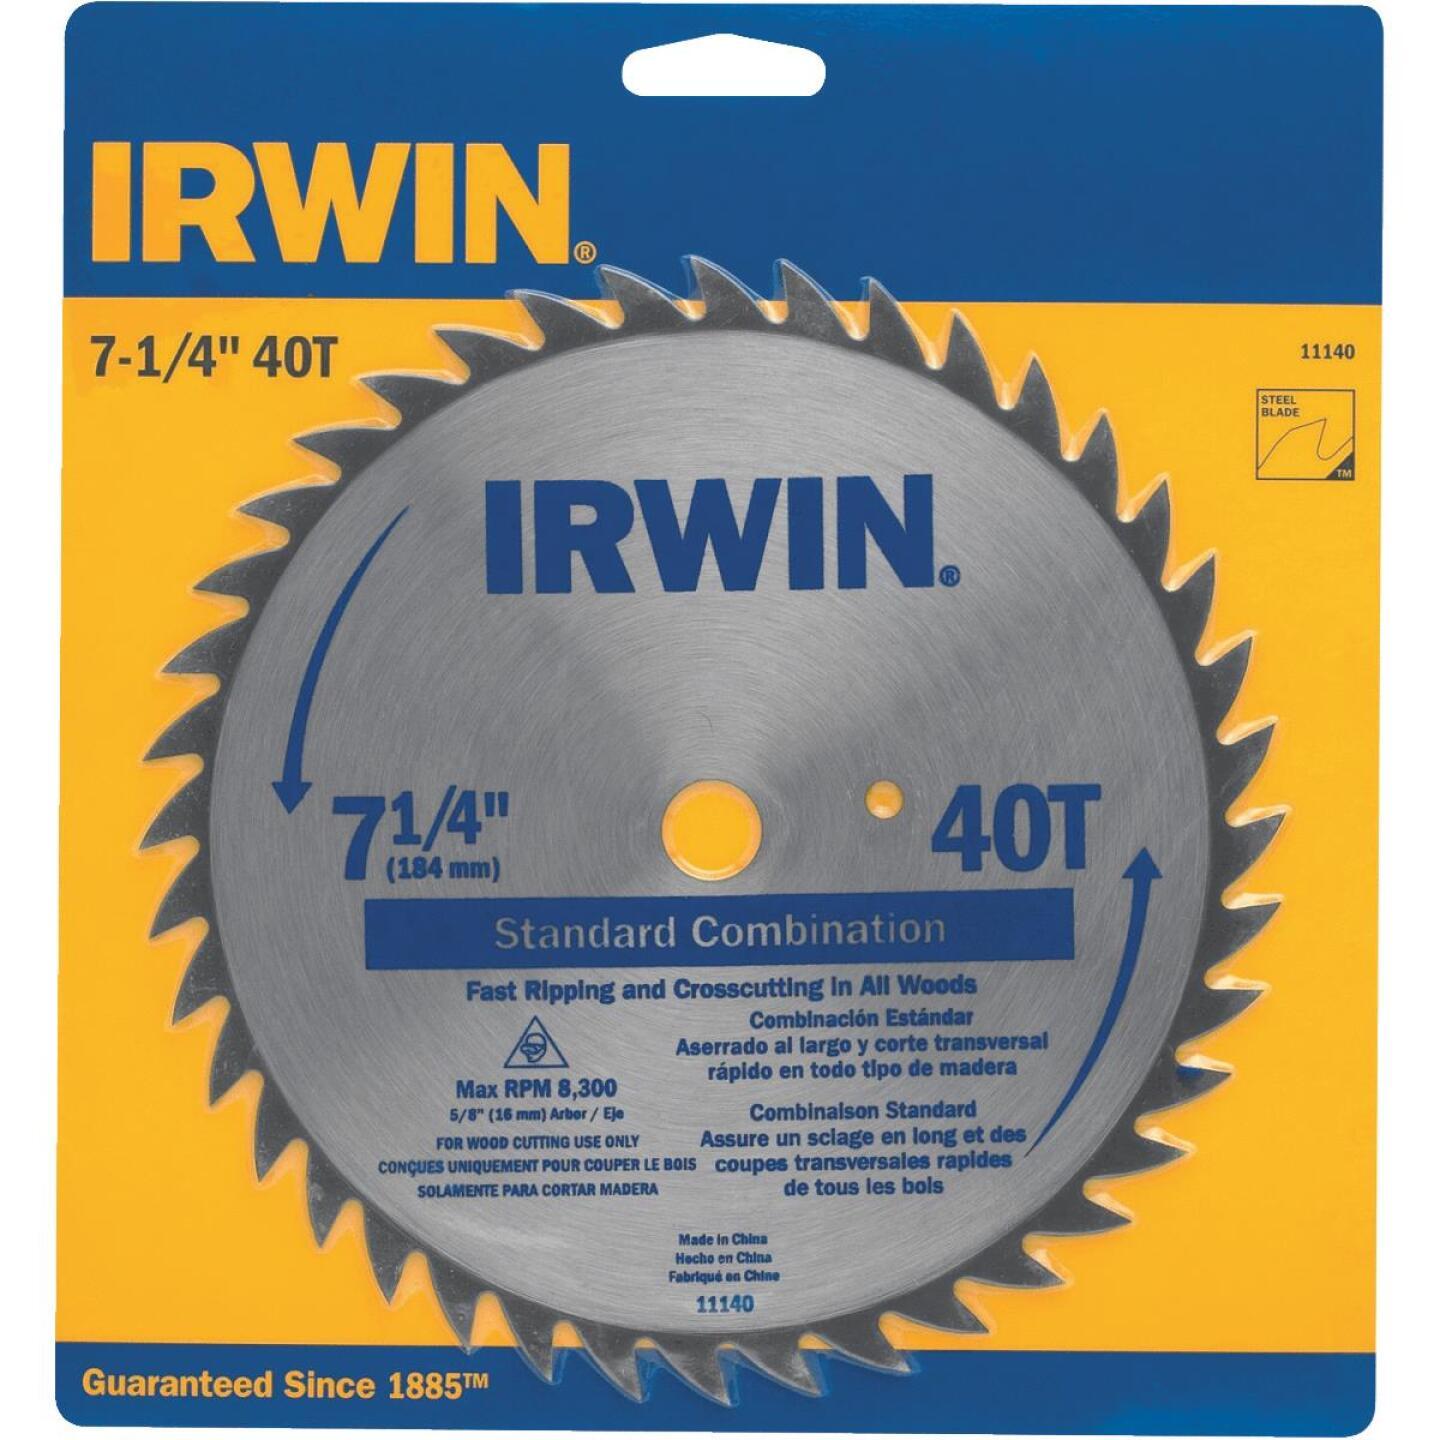 Irwin, Irwin Steel Kreissägeblatt mit 40 Zähnen für Trenn-/Kreissägearbeiten, 7-1/4 Zoll